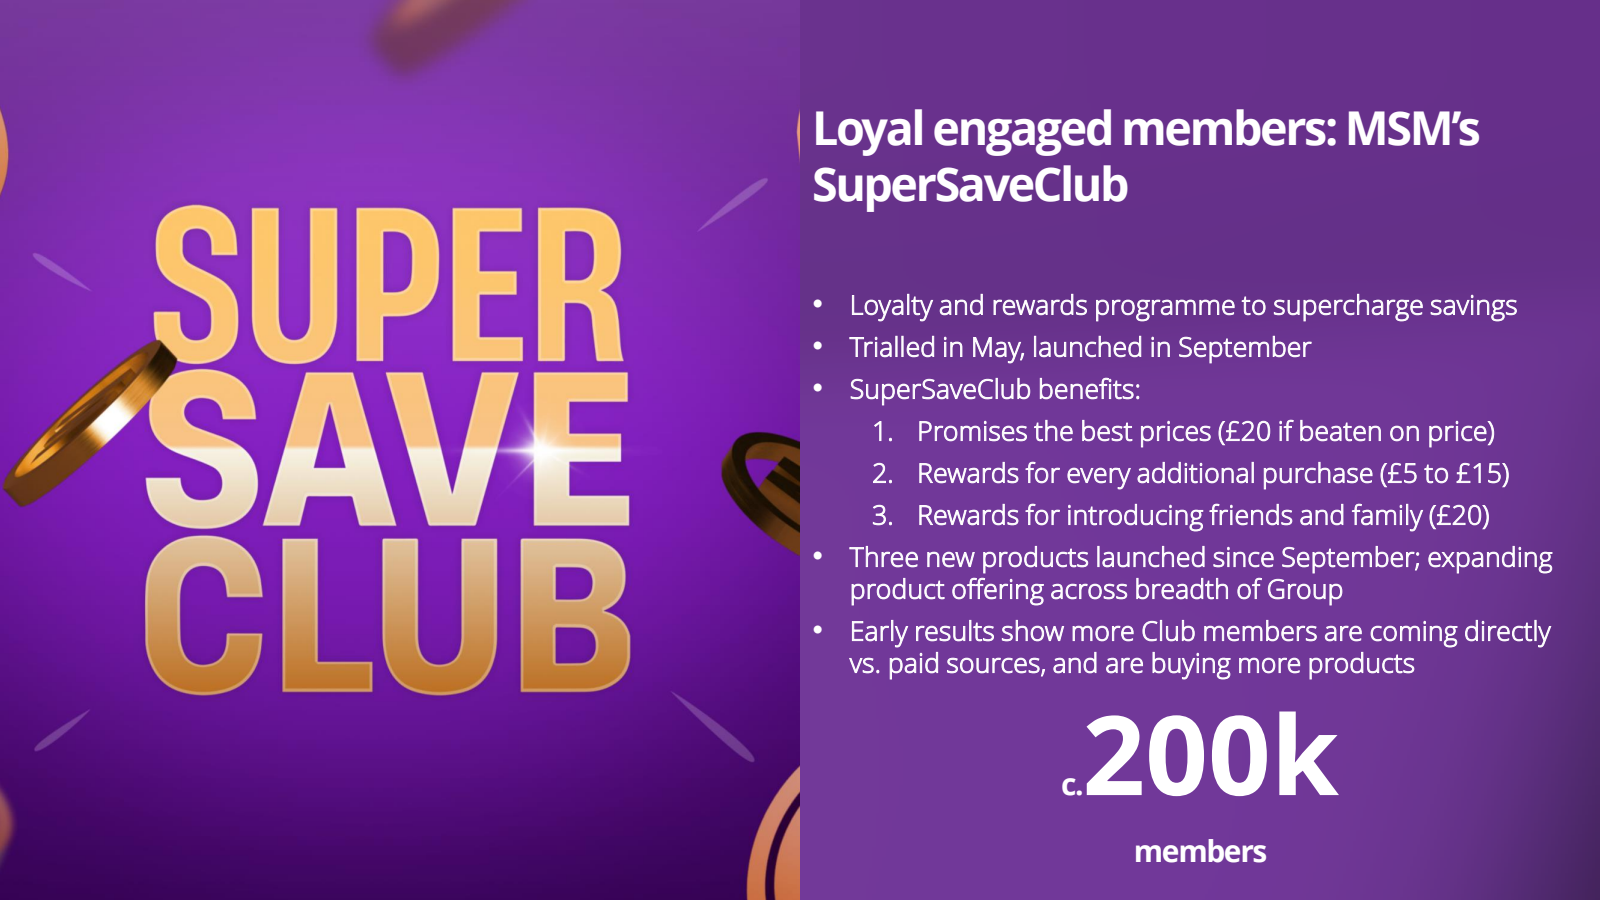 SUPER SAVE CLUB 

Lo